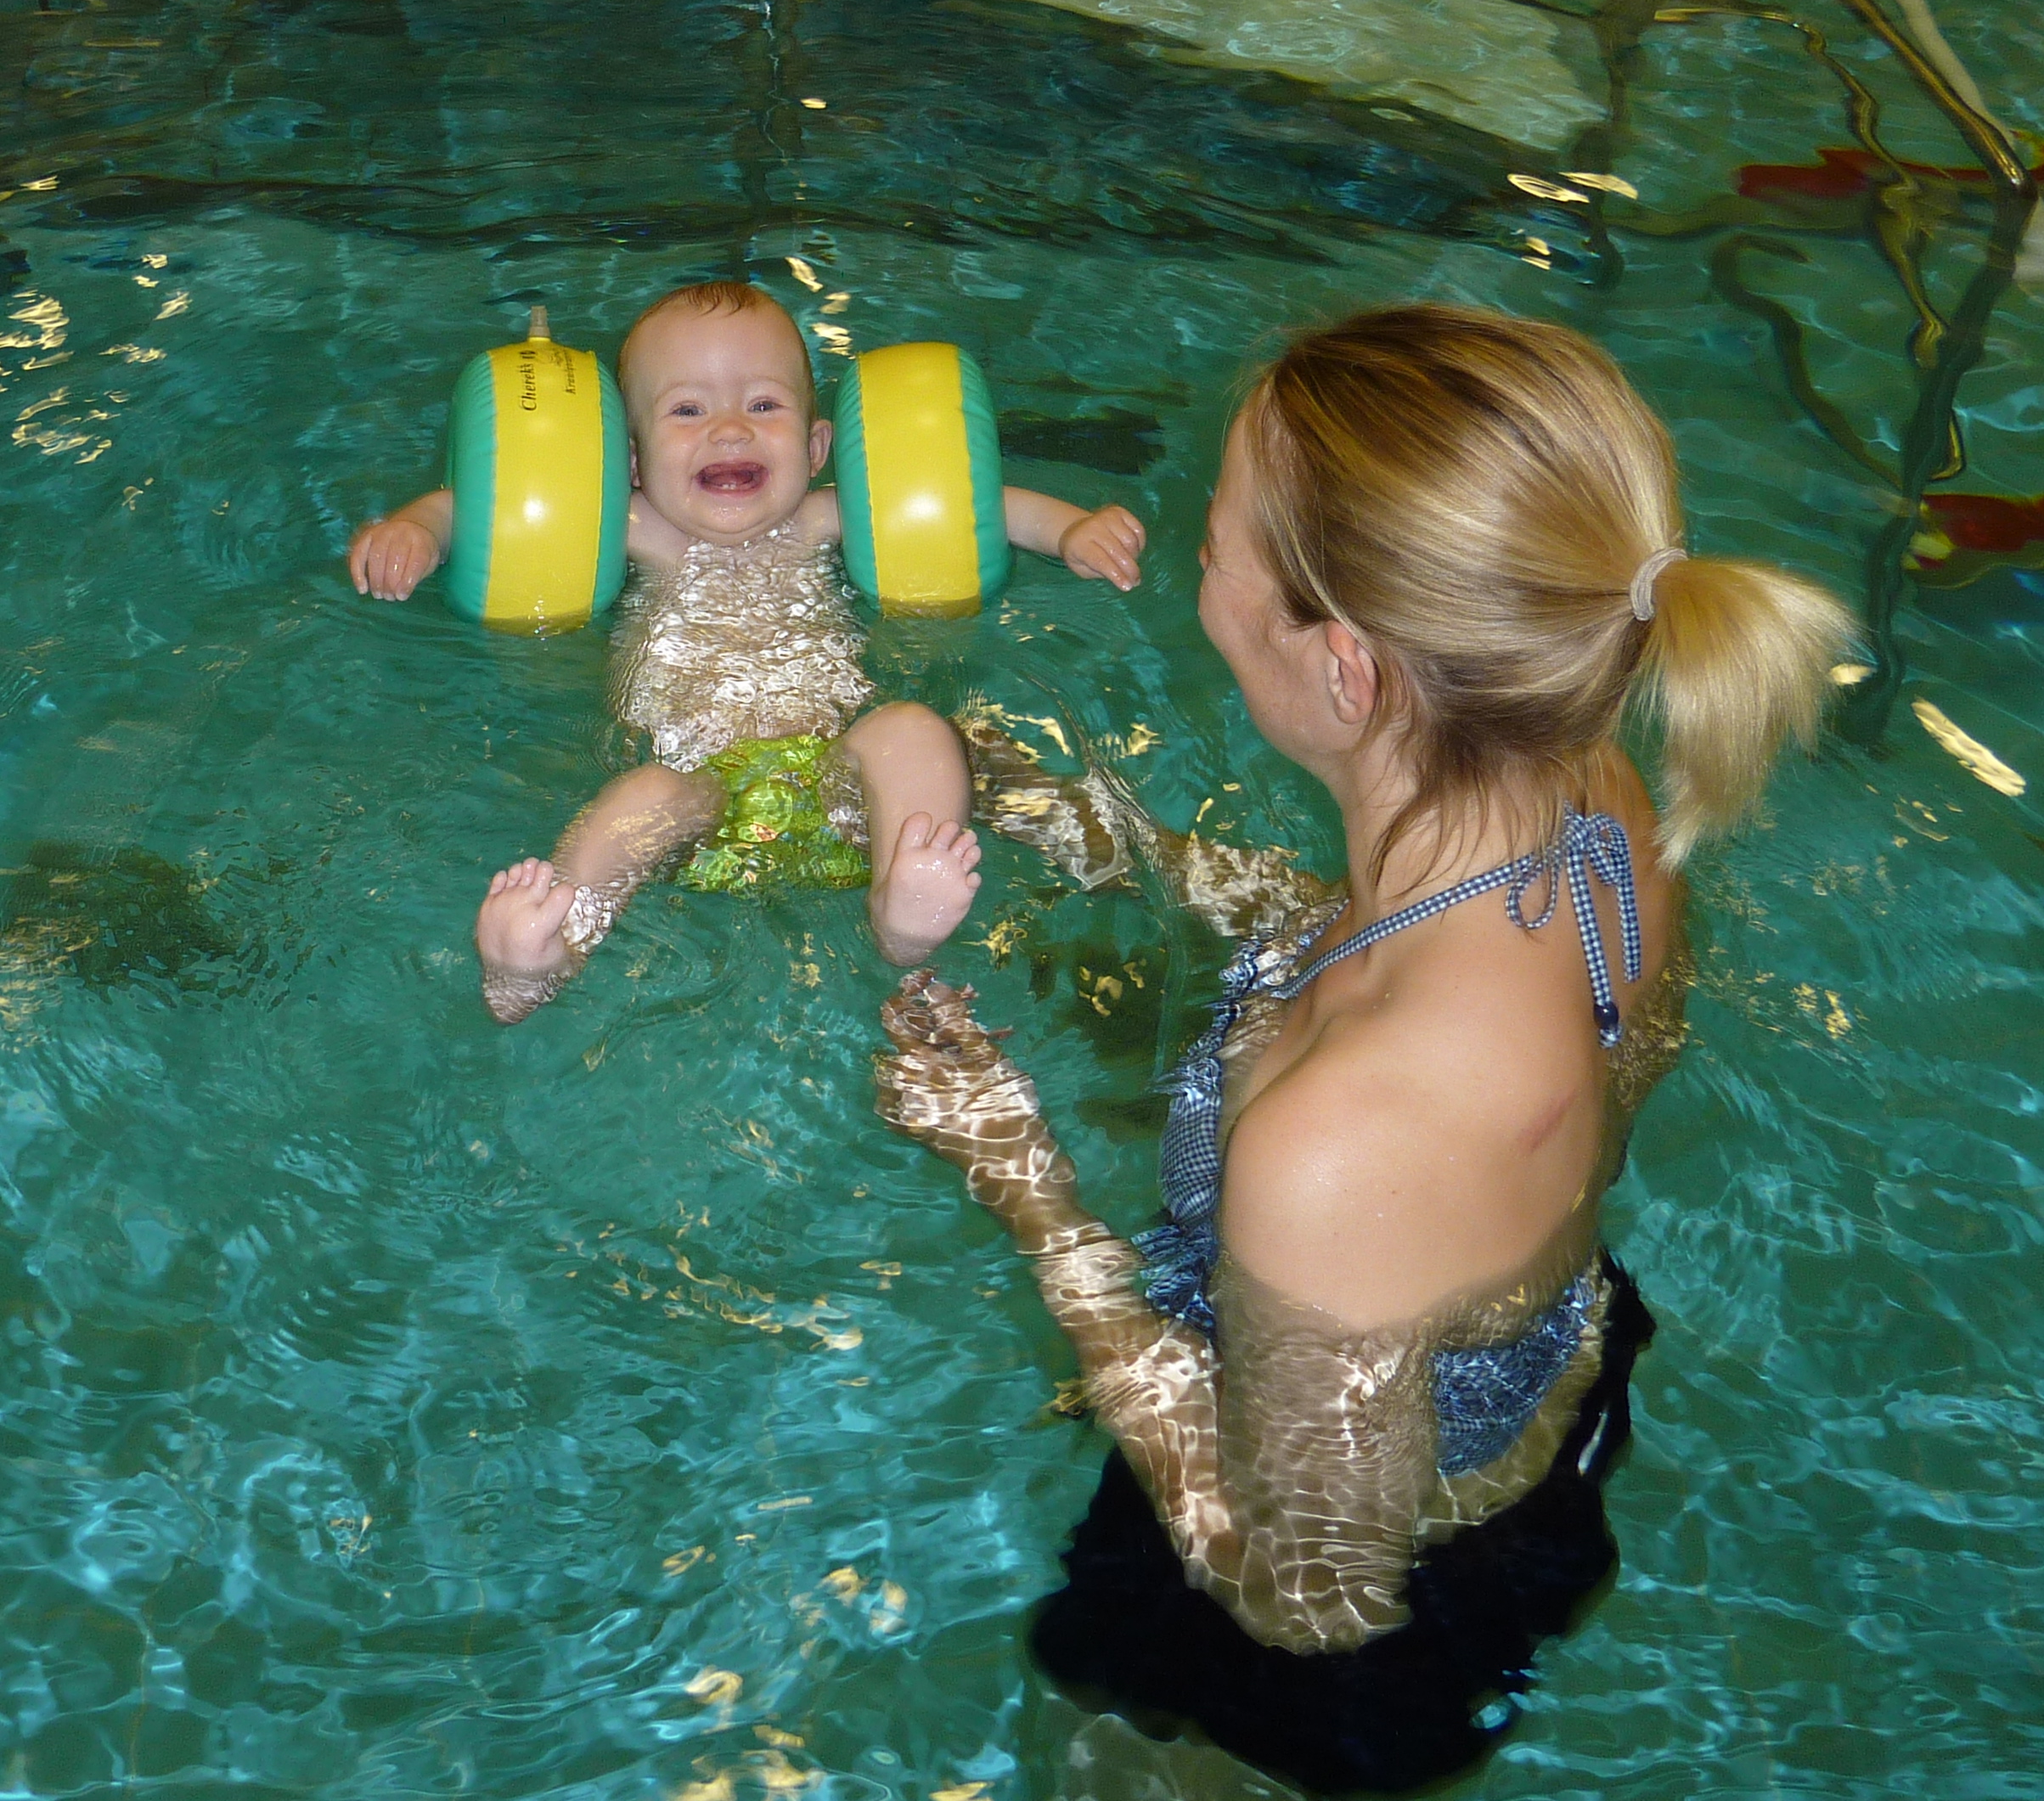 Baby Schwimmen